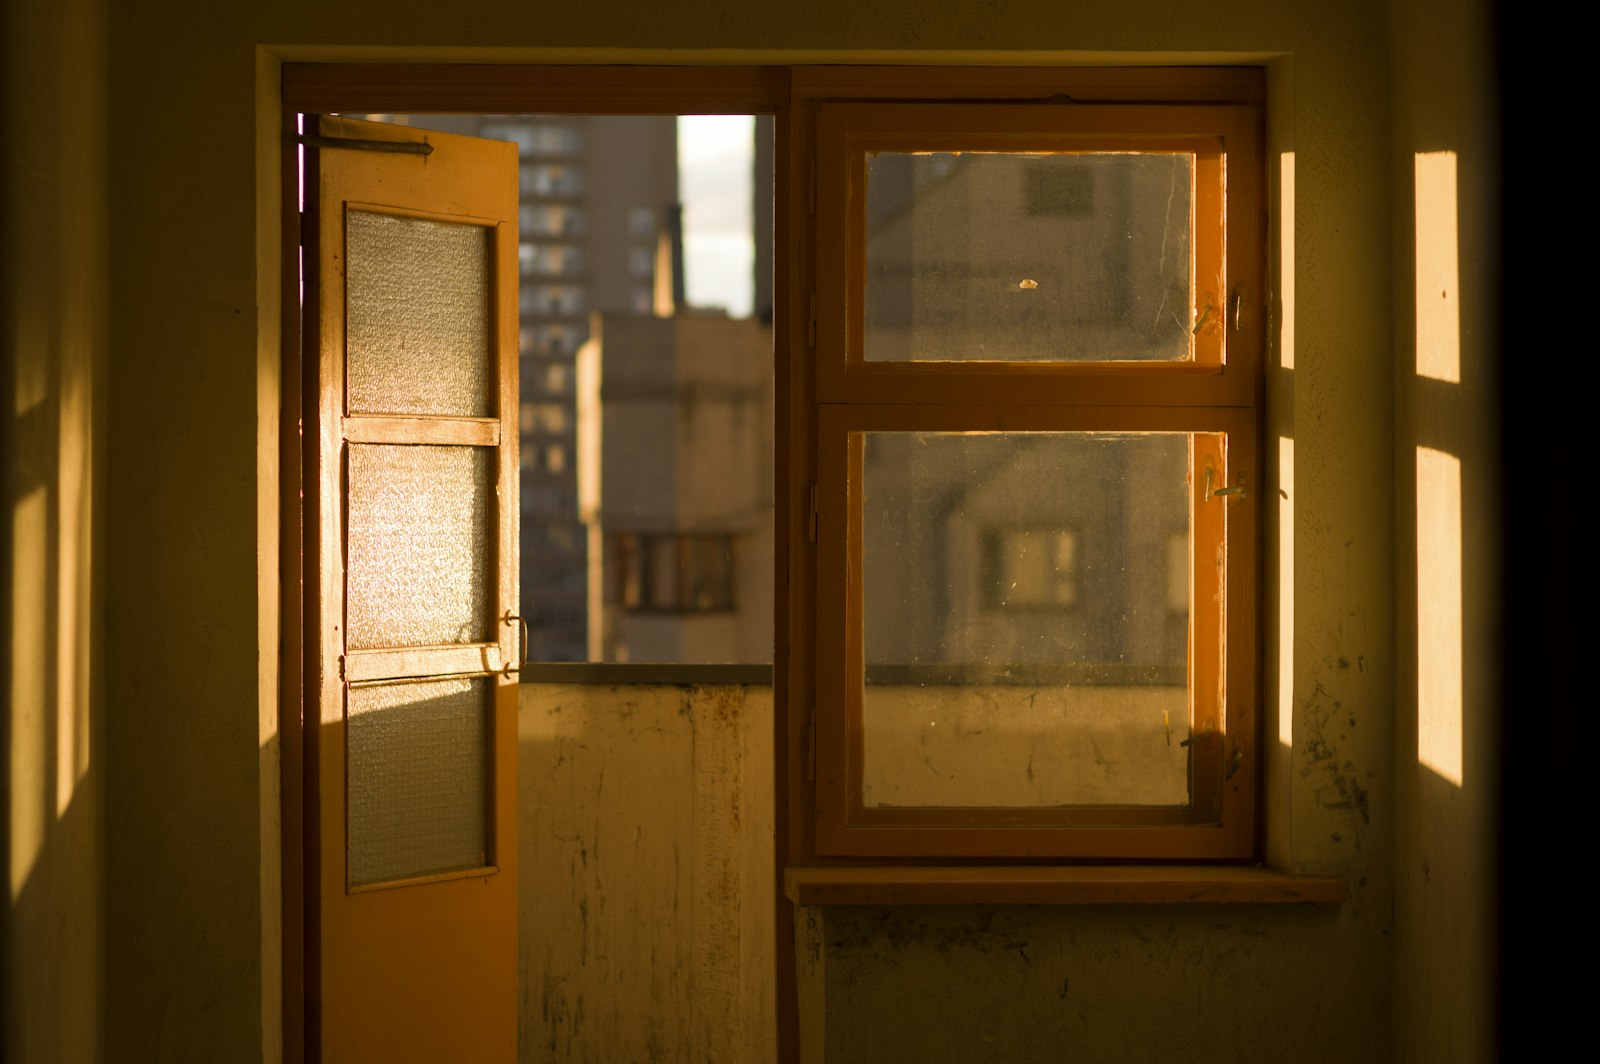 Pentax K-3 II sample photo. Brown wooden door photography